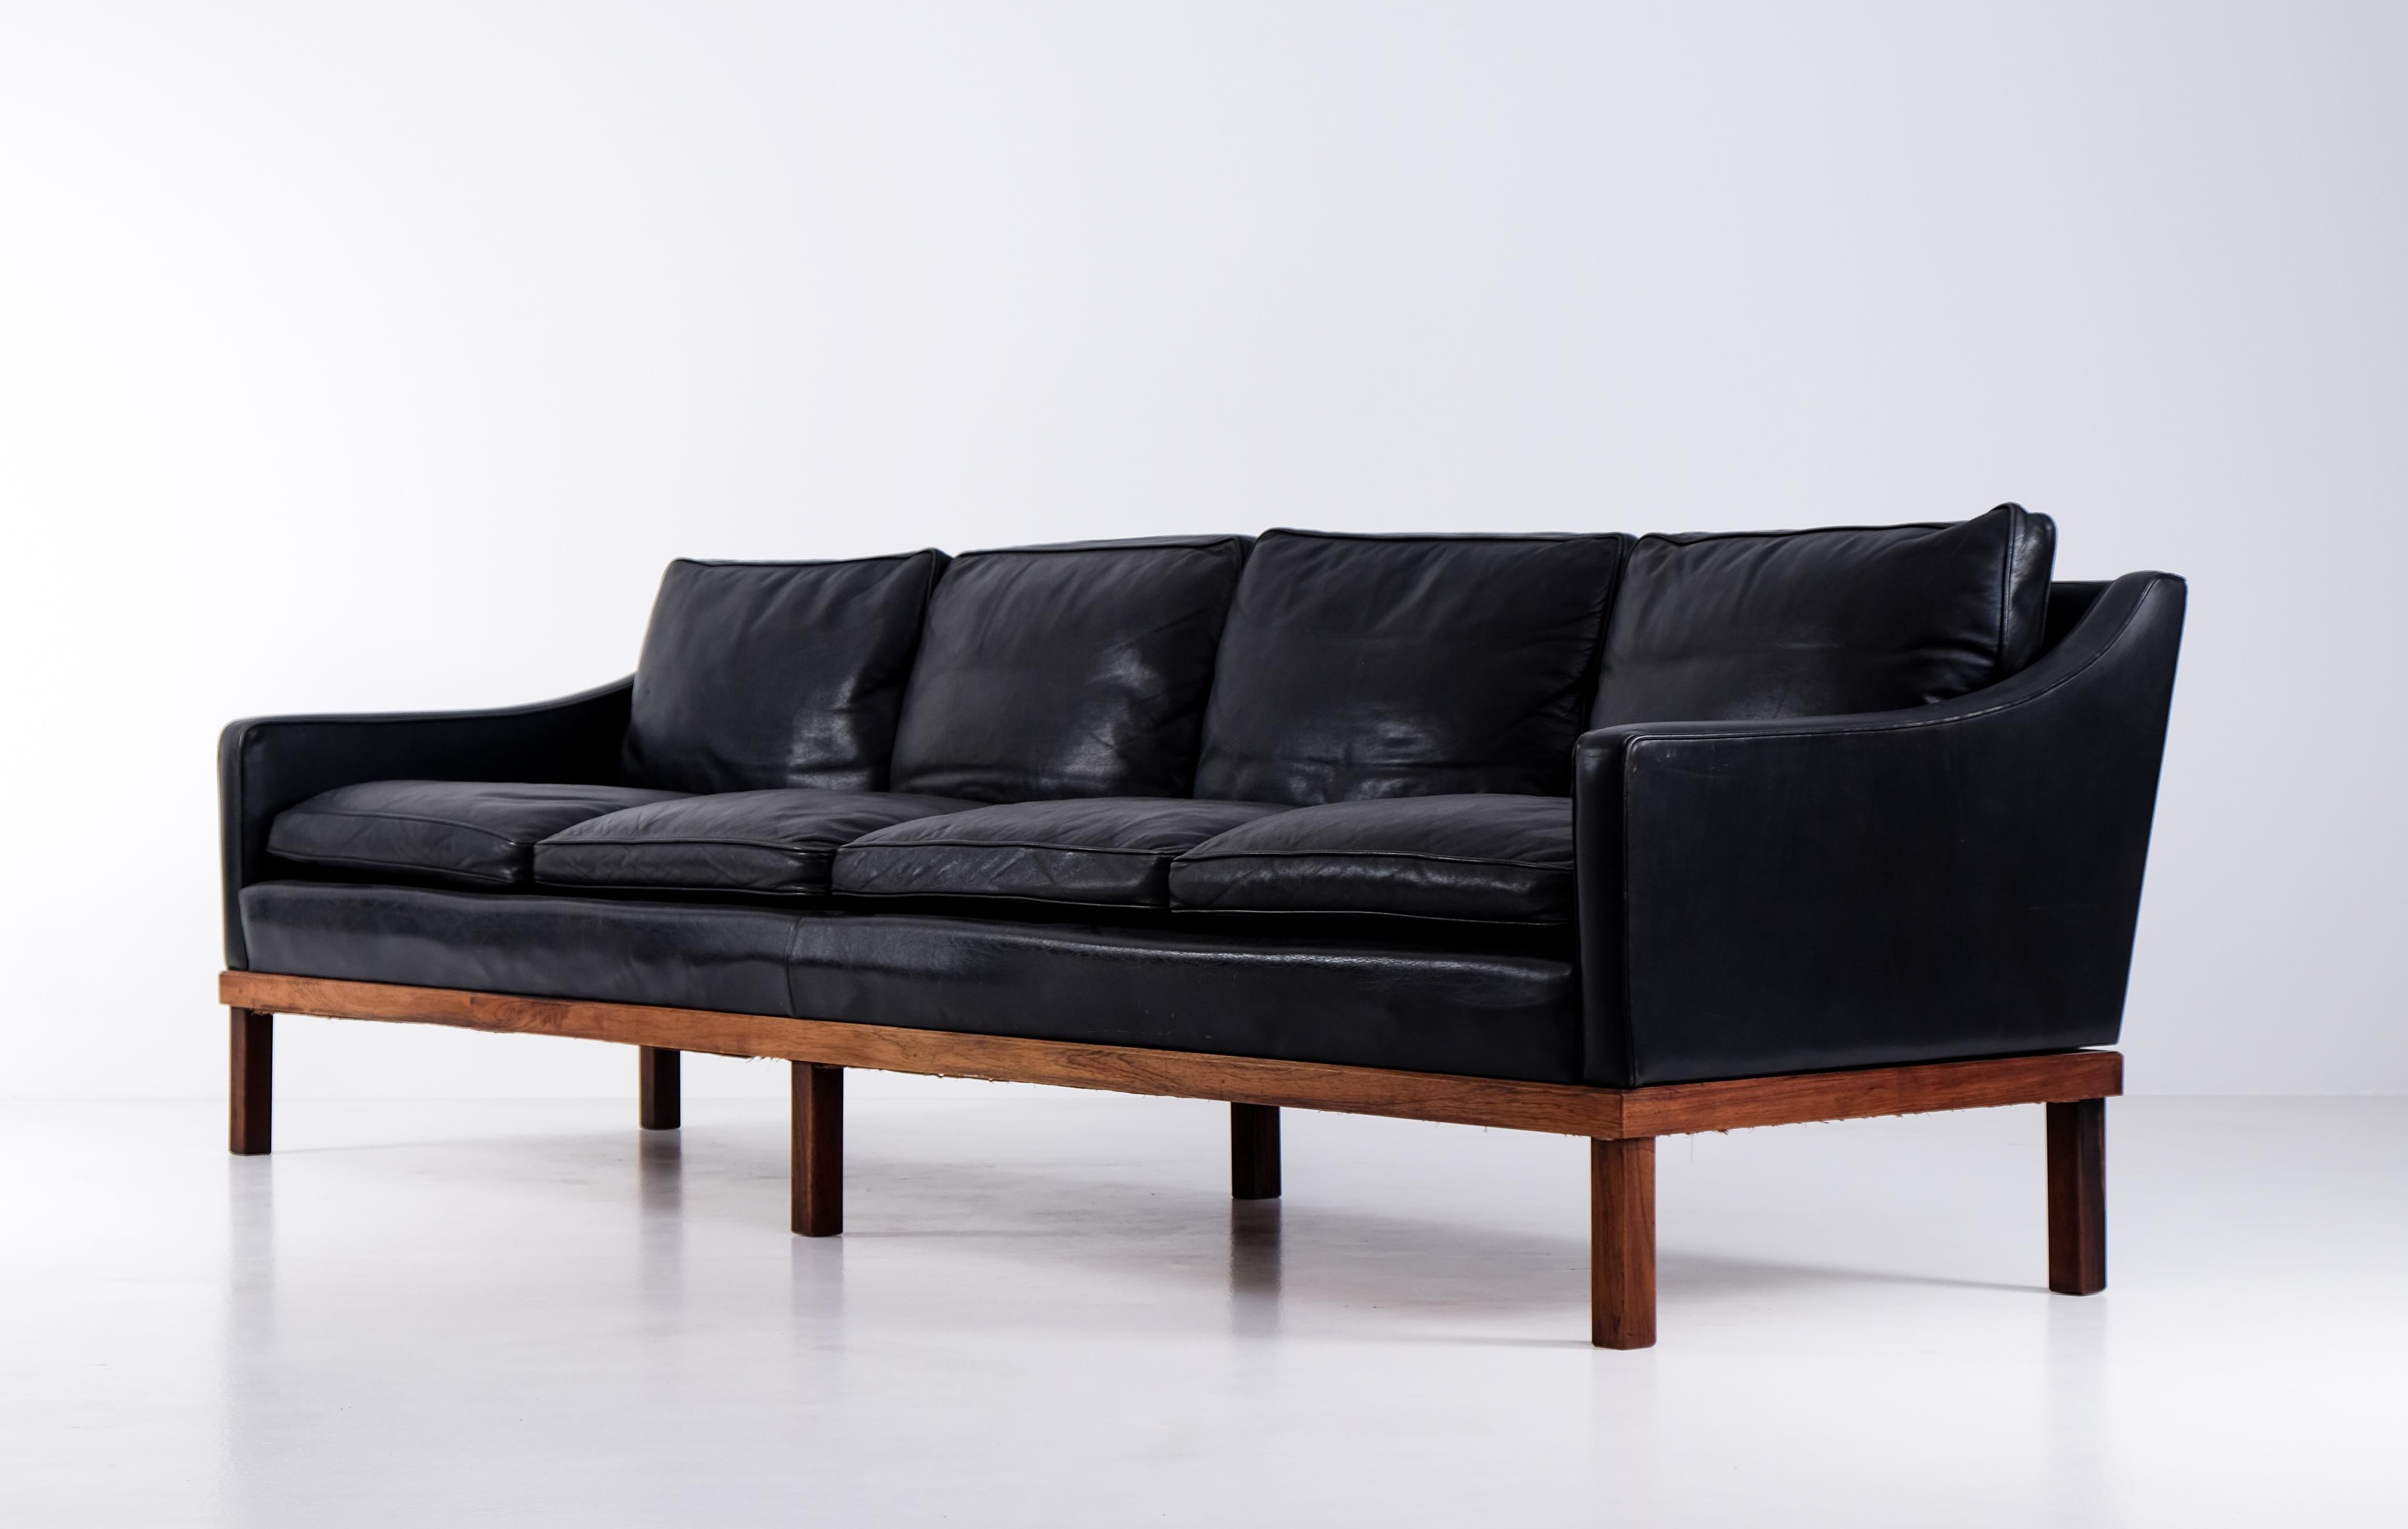 Seltenes 4-sitziges Ib Kofod Larsen Sofa in original schwarzem Leder, sehr guter Zustand. Produziert von OPE in Schweden, 1960er Jahre.
 